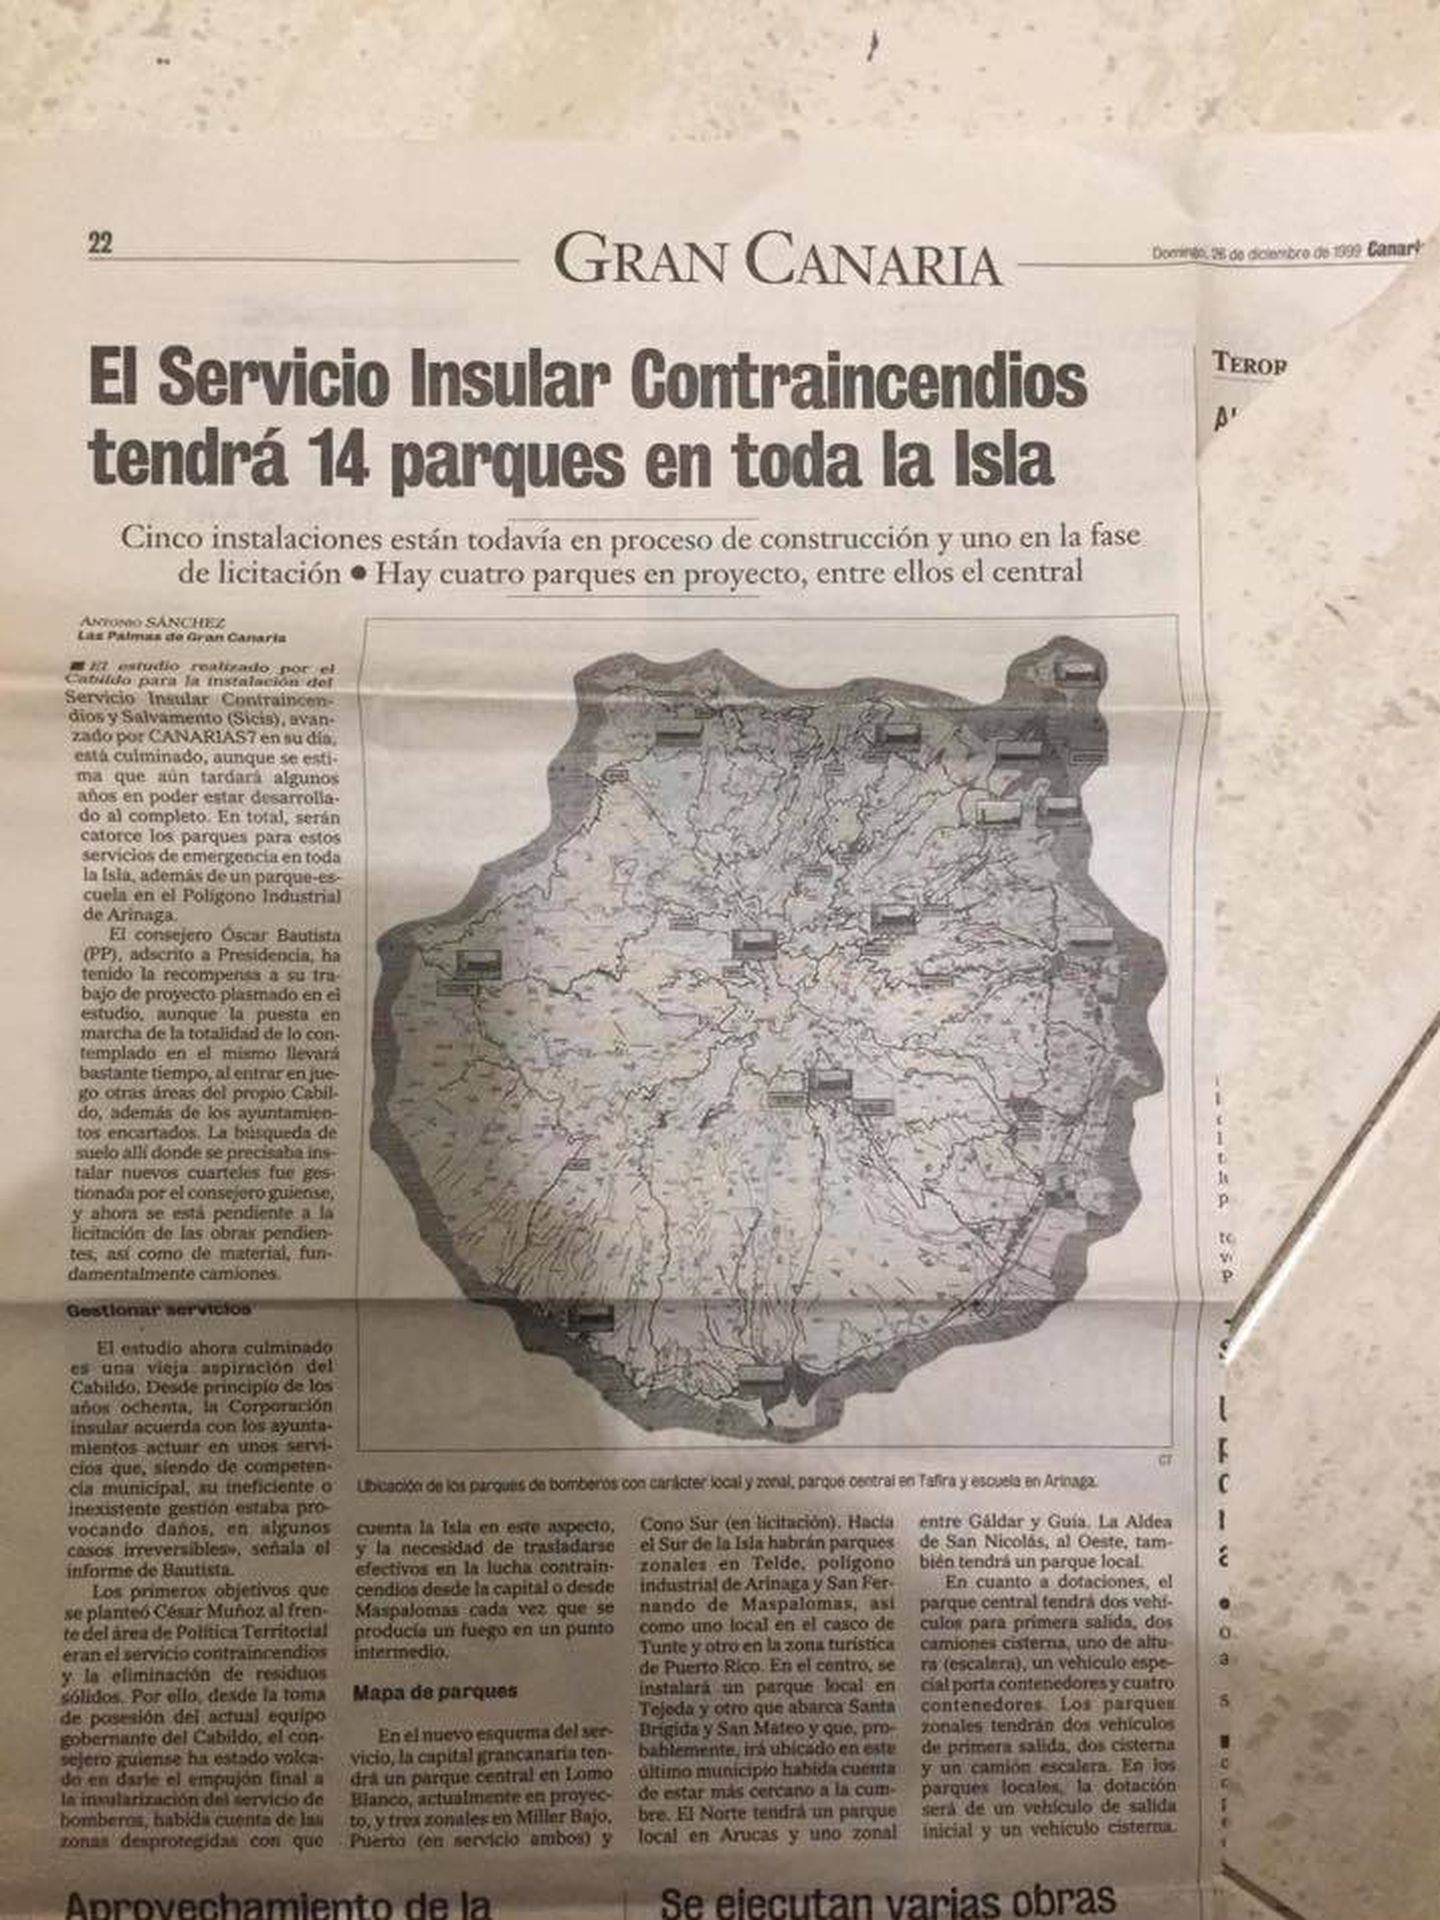 Página del Canarias 7 de 1999 rescatada por el Consorcio de Bomberos estos días. (Facebook)